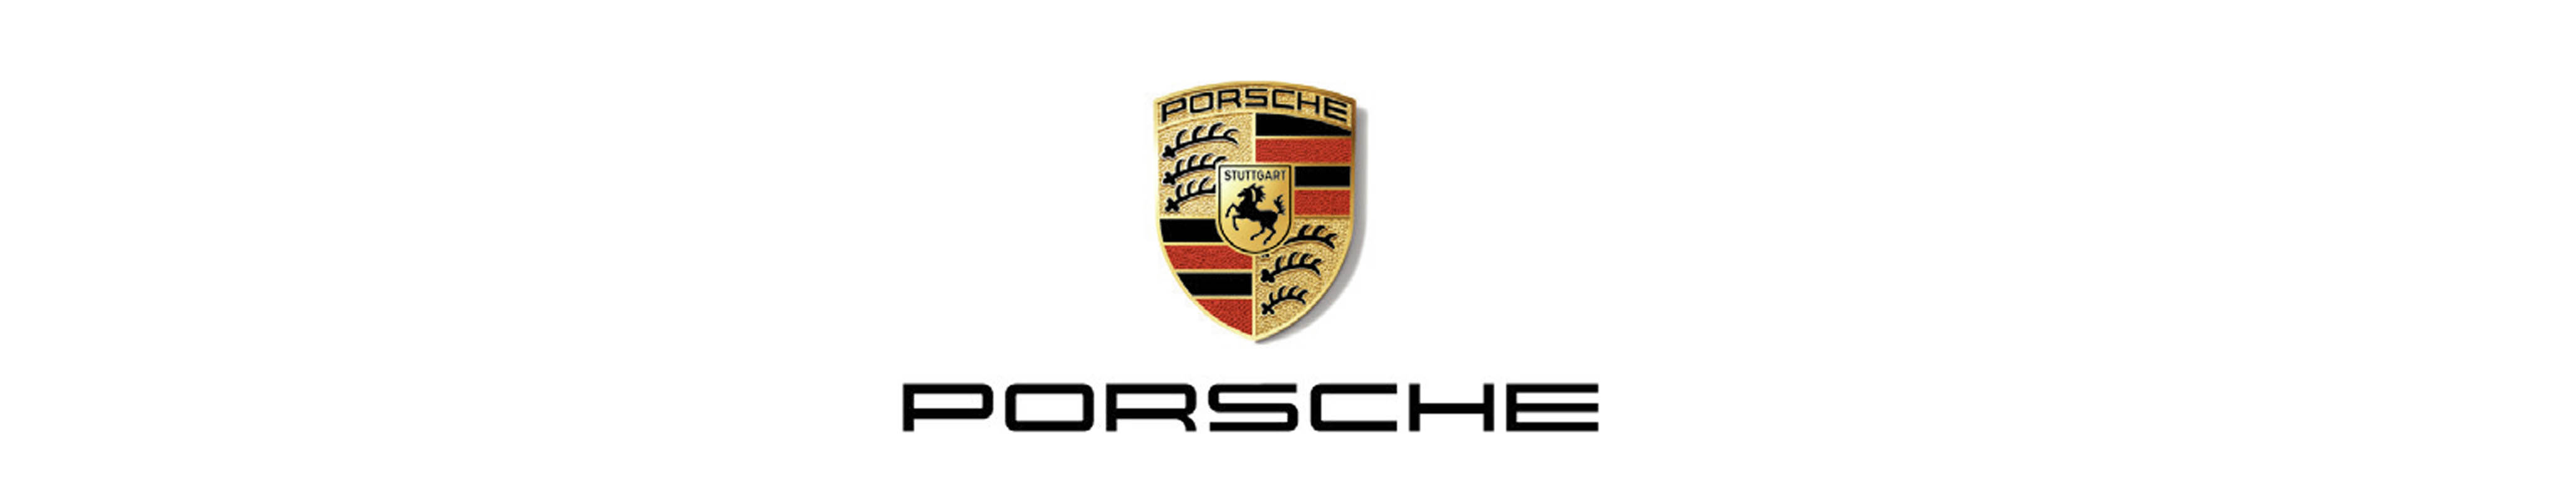 www.porsche.de